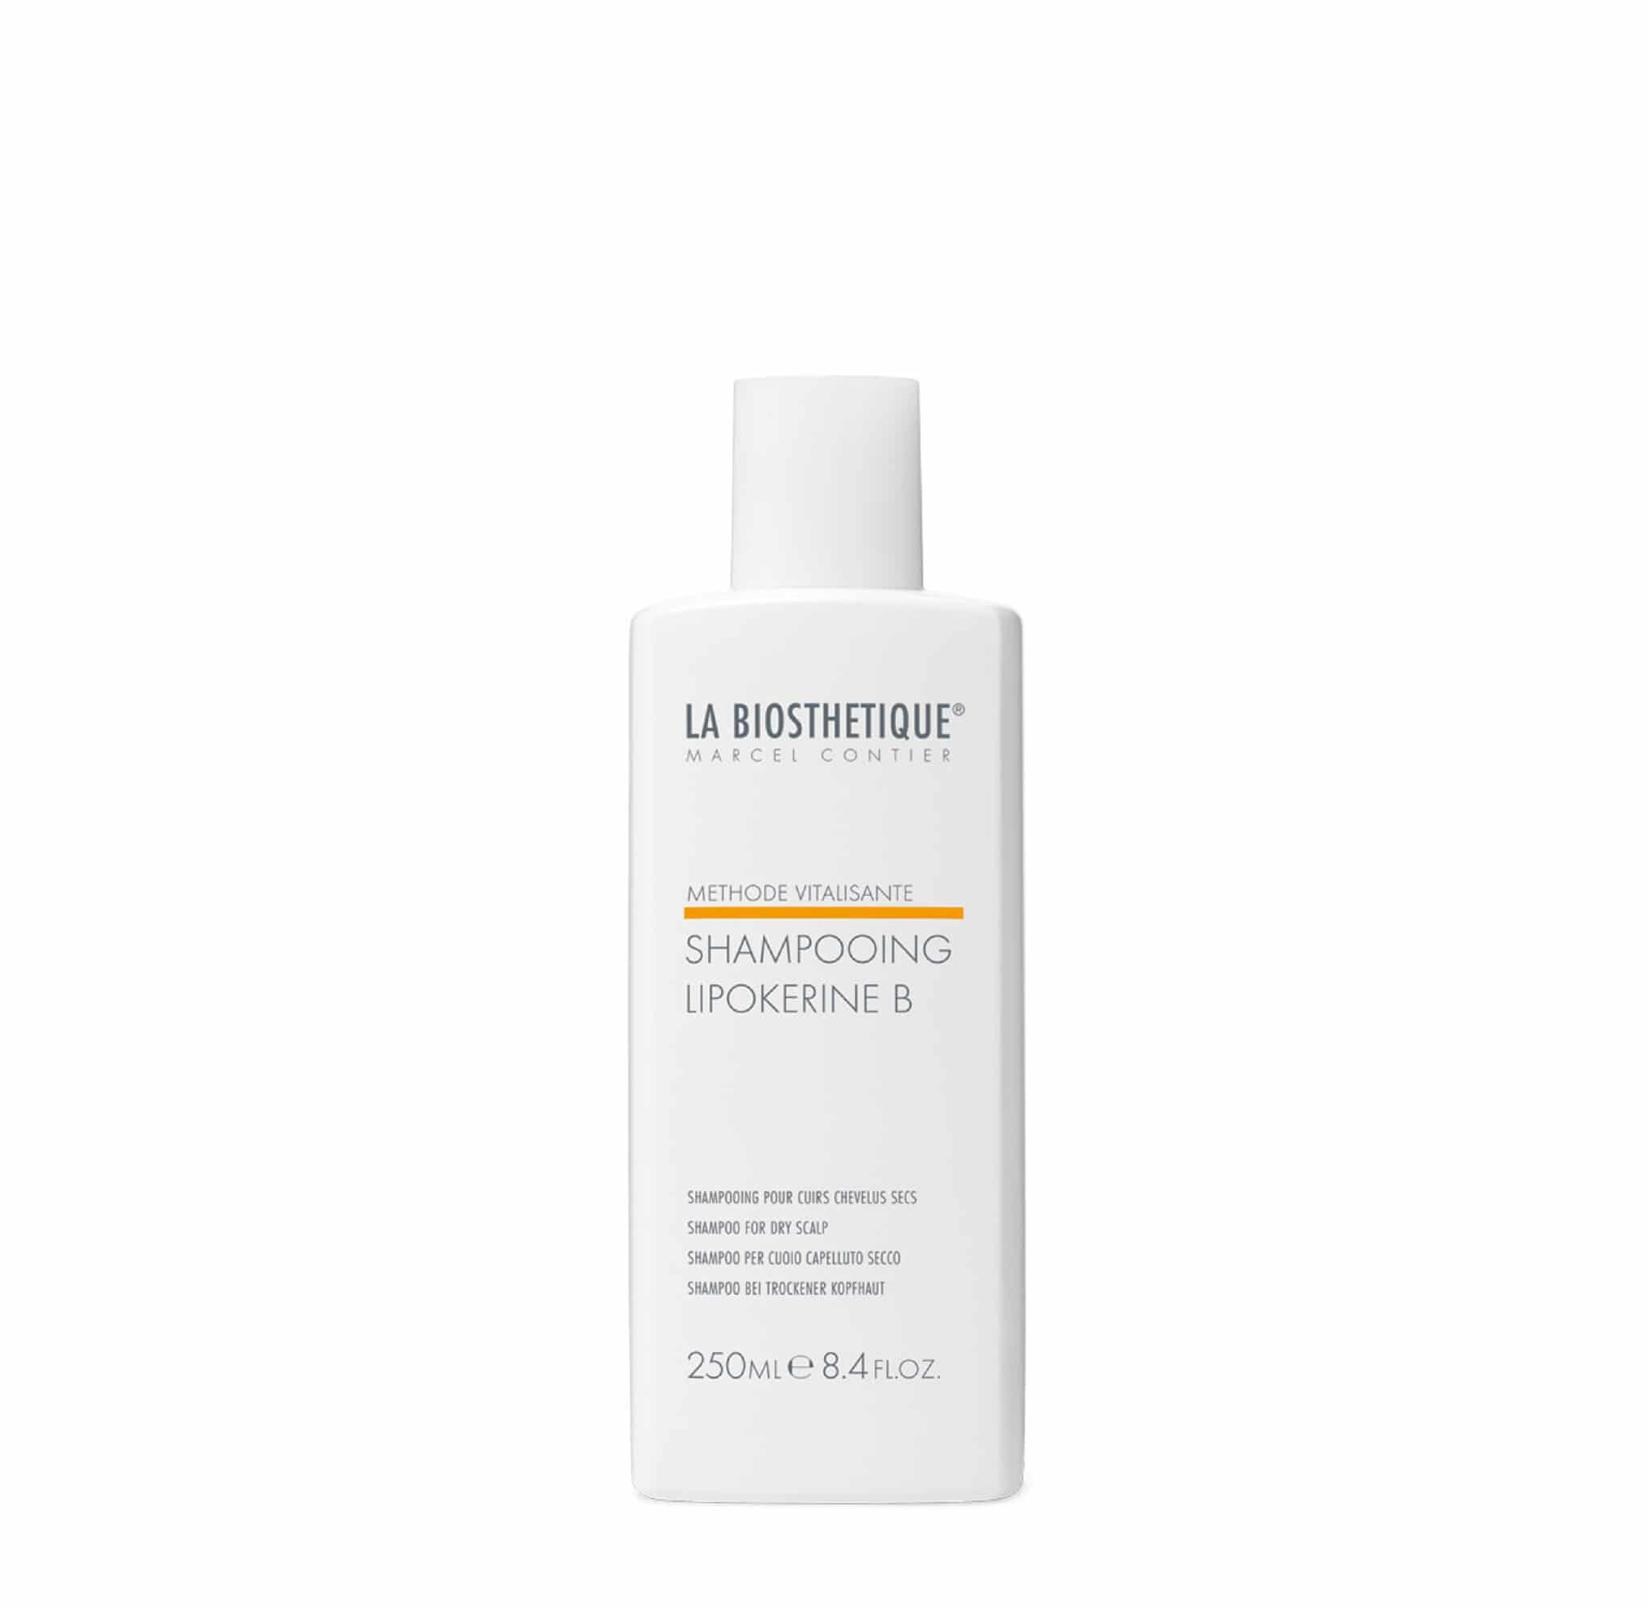 Selected image for La Biosthetique Šampon za tretiranje suvog vlasišta Shampooing Lipokerine B 250 ml